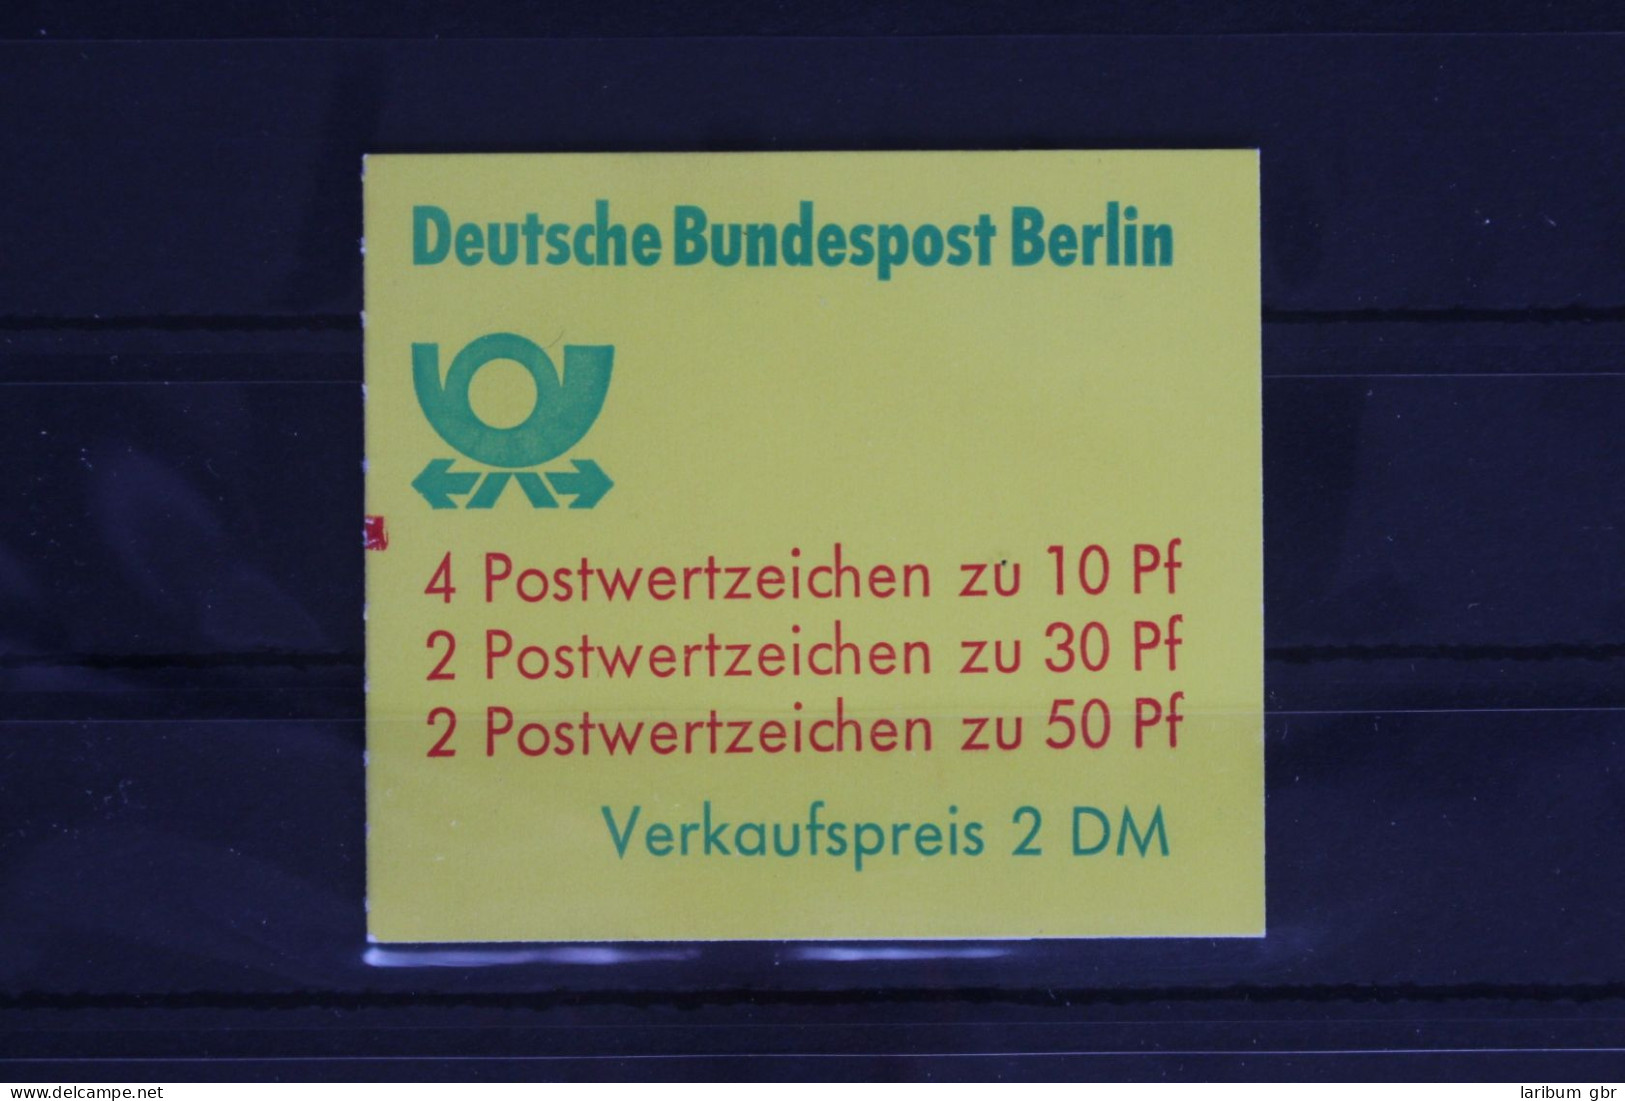 Berlin MH 10 B A MZ Postfrisch Markenheftchen #FY324 - Carnets